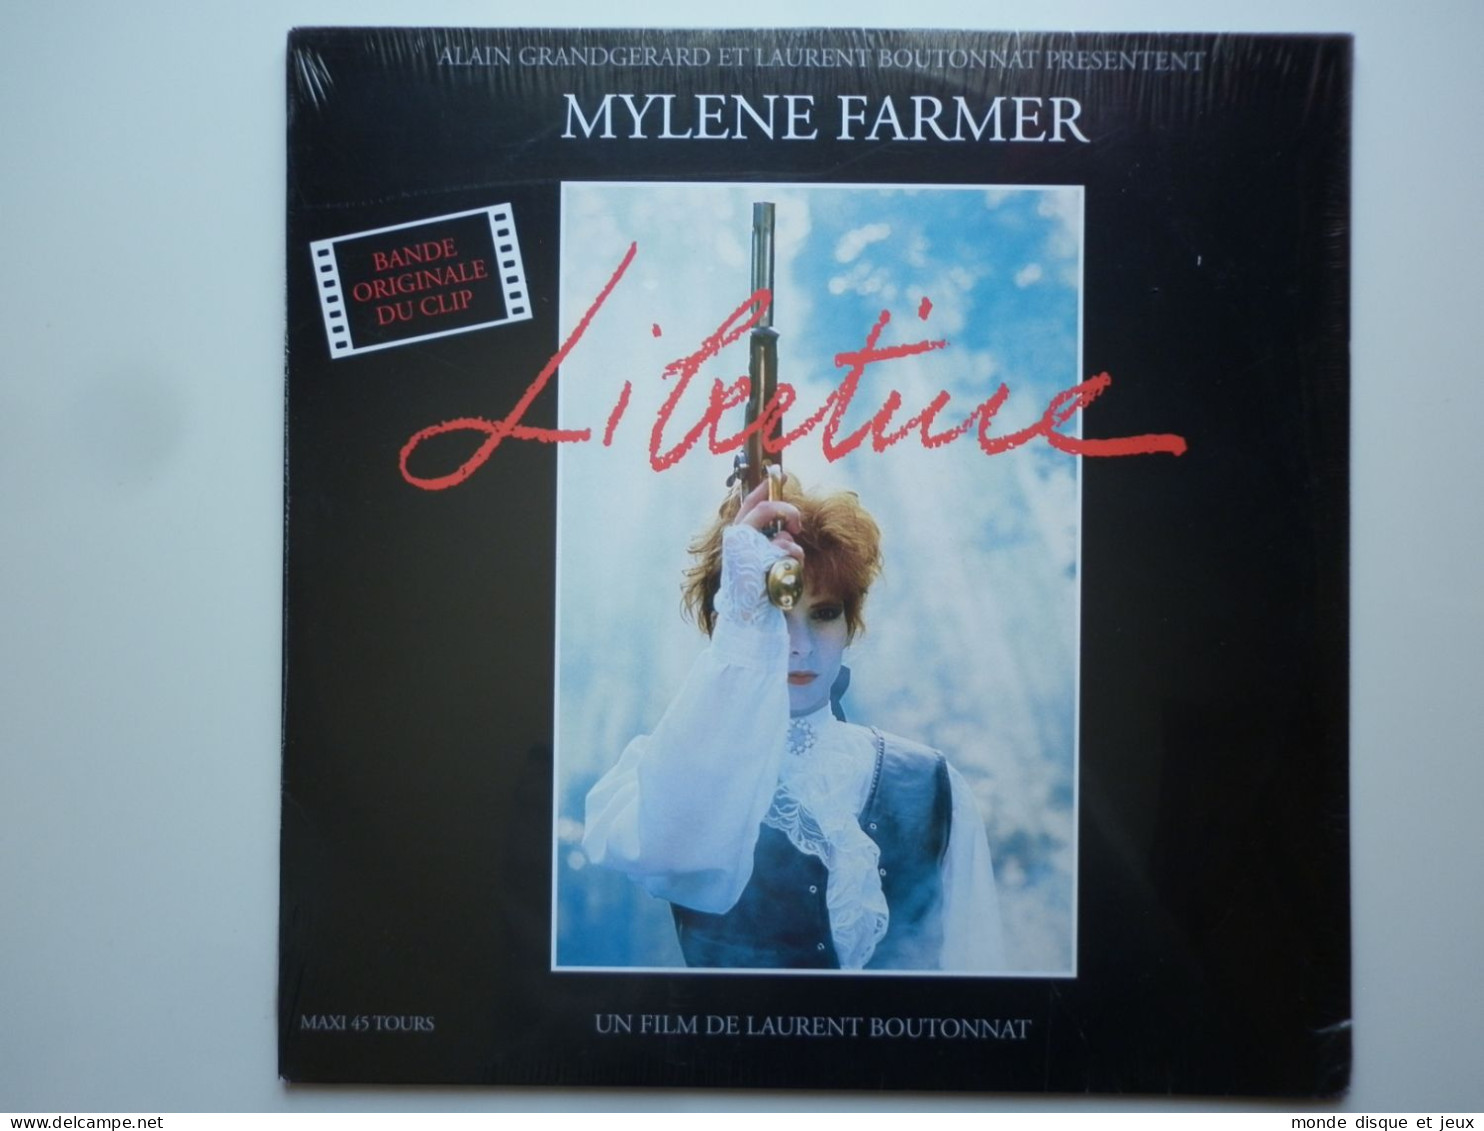 Mylene Farmer Maxi 45Tours Vinyle Libertine Bande Original Du Clip Exclusivité Couleur Rouge - 45 T - Maxi-Single